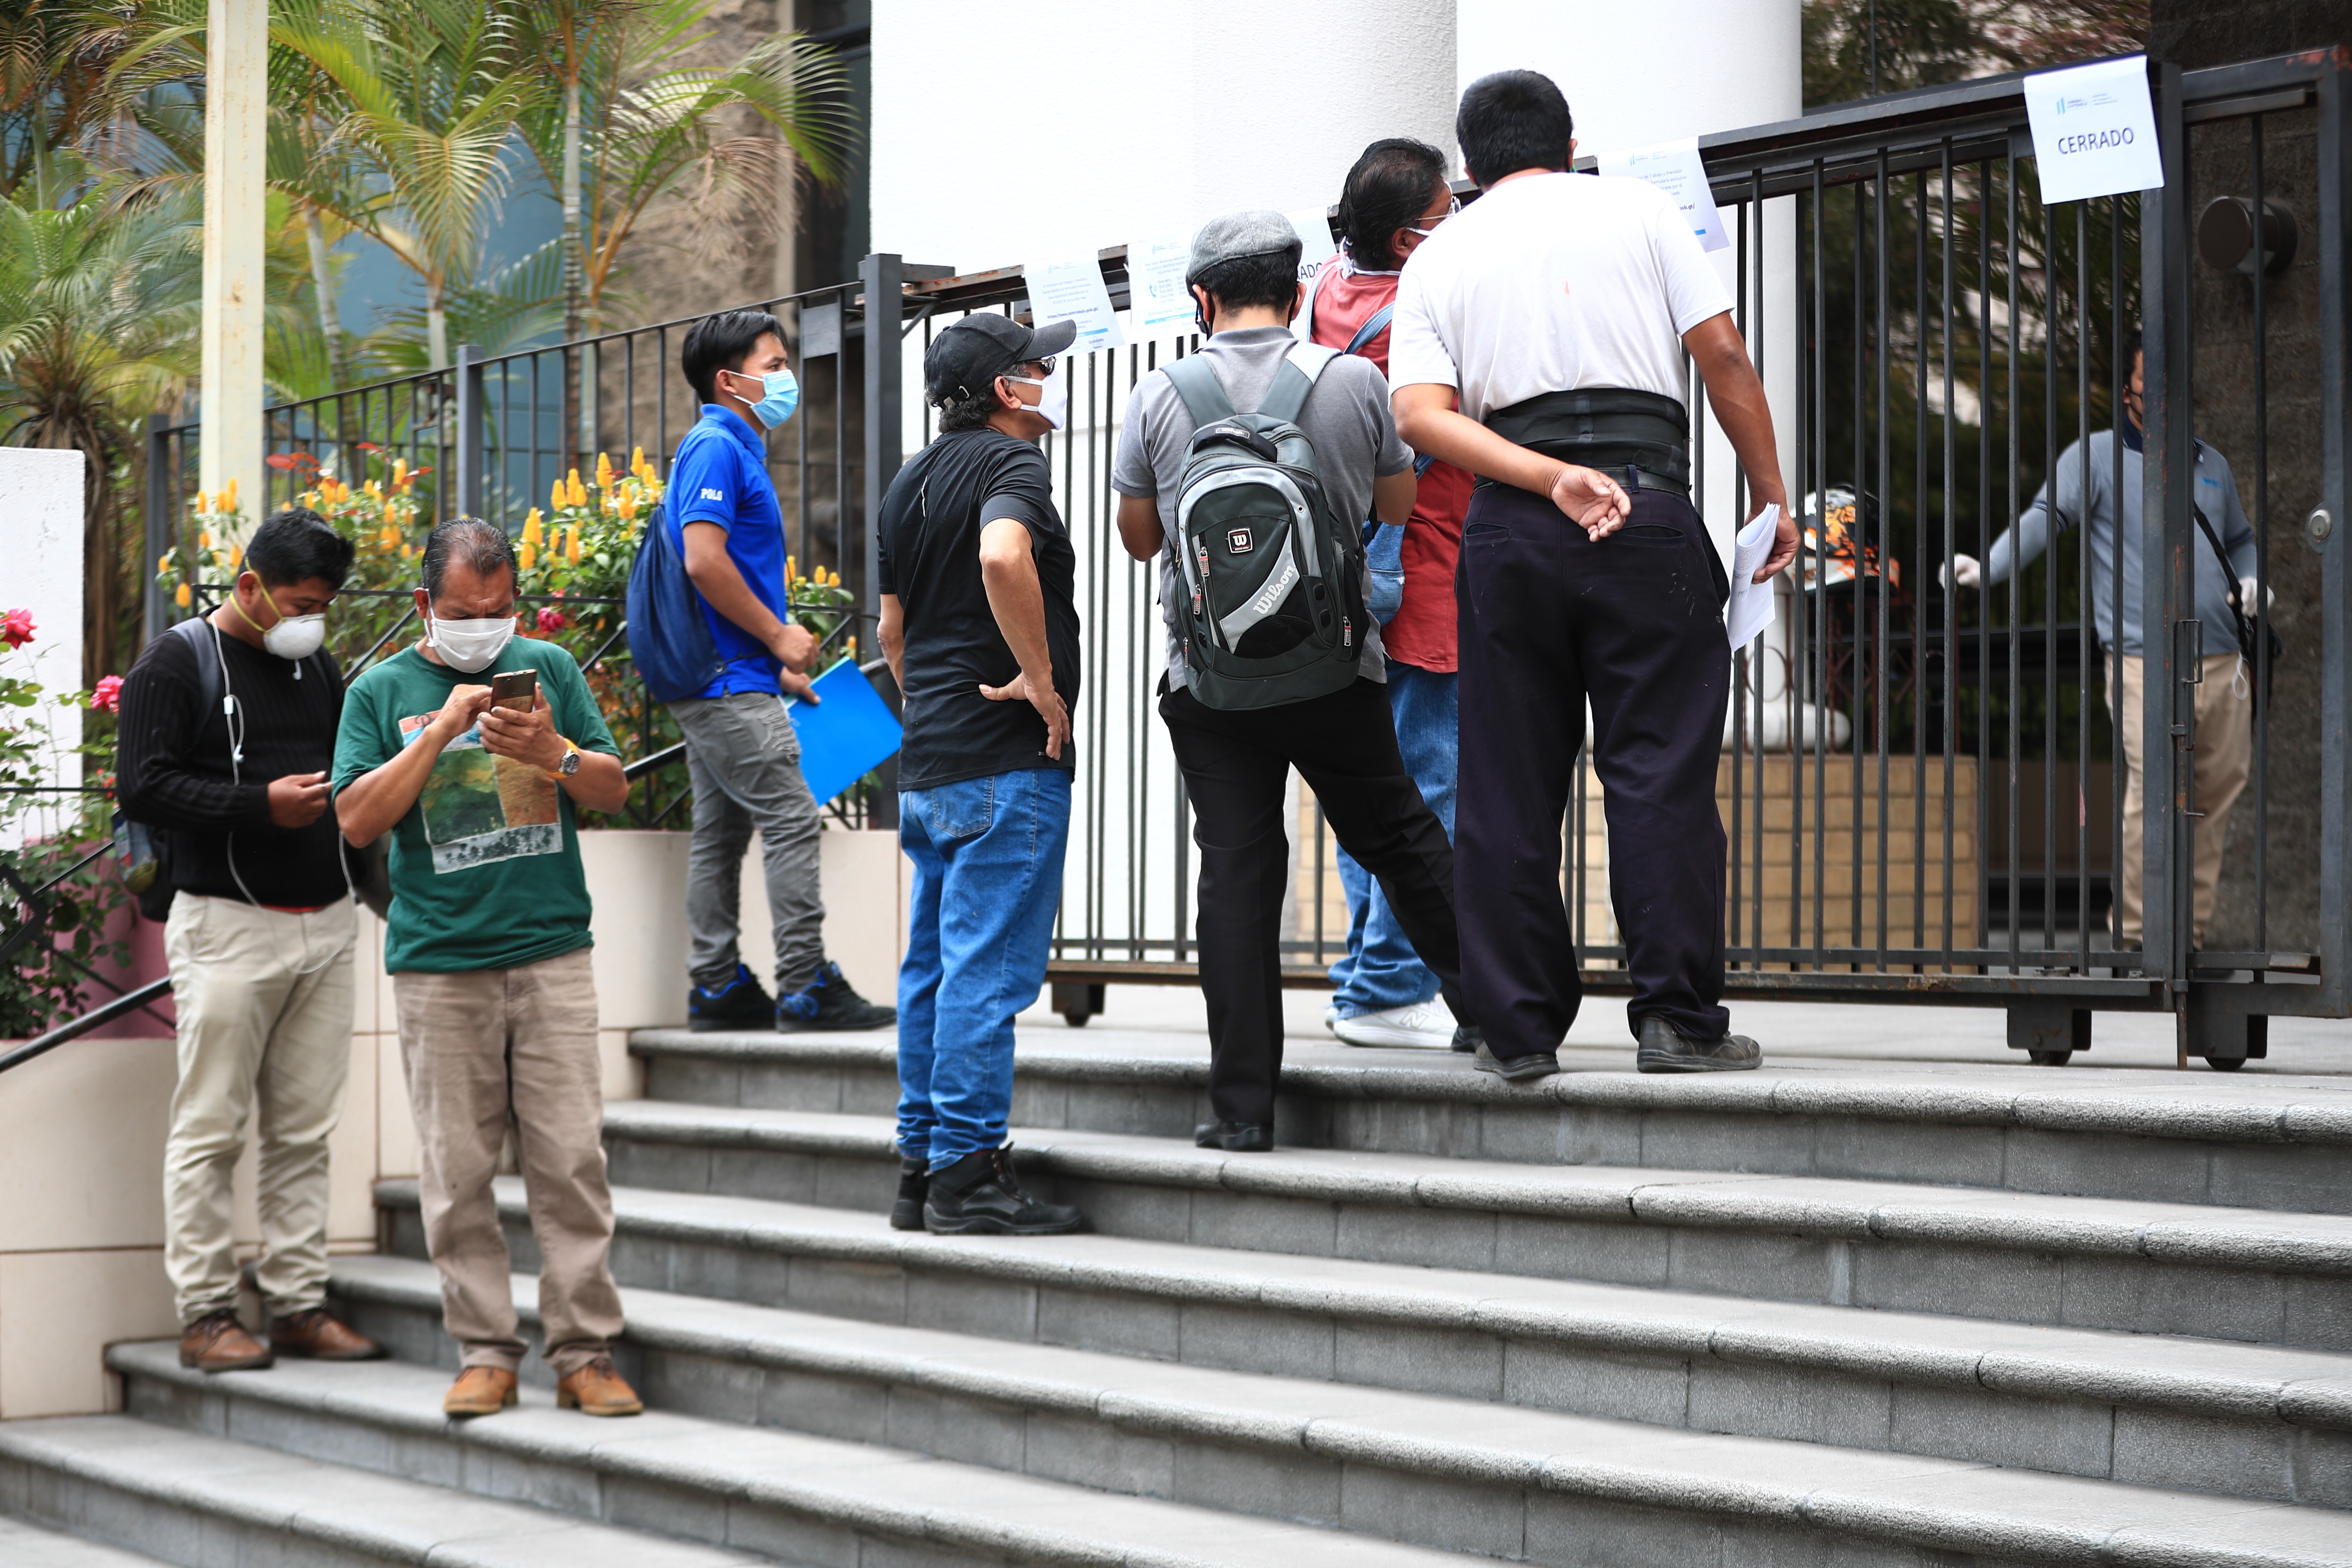 Mayor desempleo y el incremento de la pobreza impactarán a la región de América Latina en 2020 por el efecto del covid-19, según la Cepal, organismo que estimó un crecimiento negativo de la economía guatemalteca en 1.3%. (Foto Prensa Libre: Hemeroteca) 